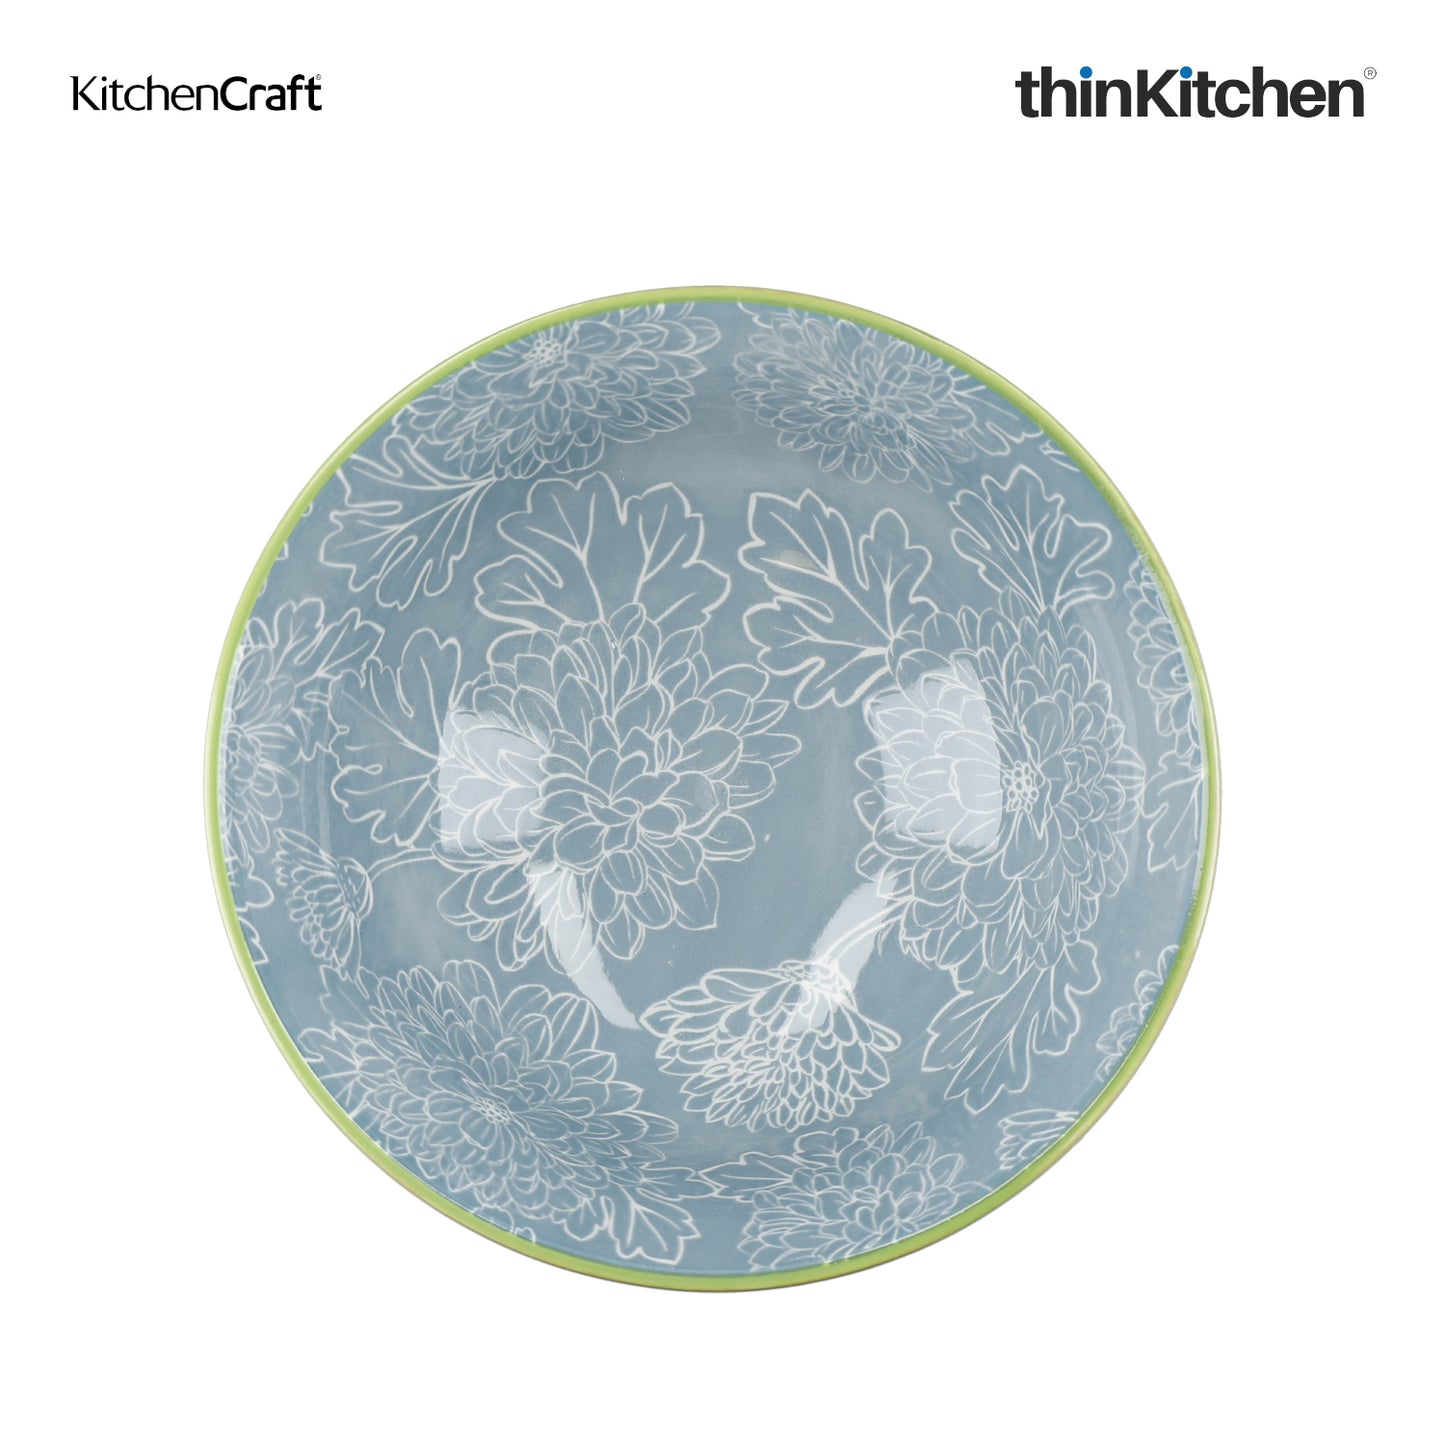 KitchenCraft Brights Glazed Stoneware Bowl Set, Set of 4